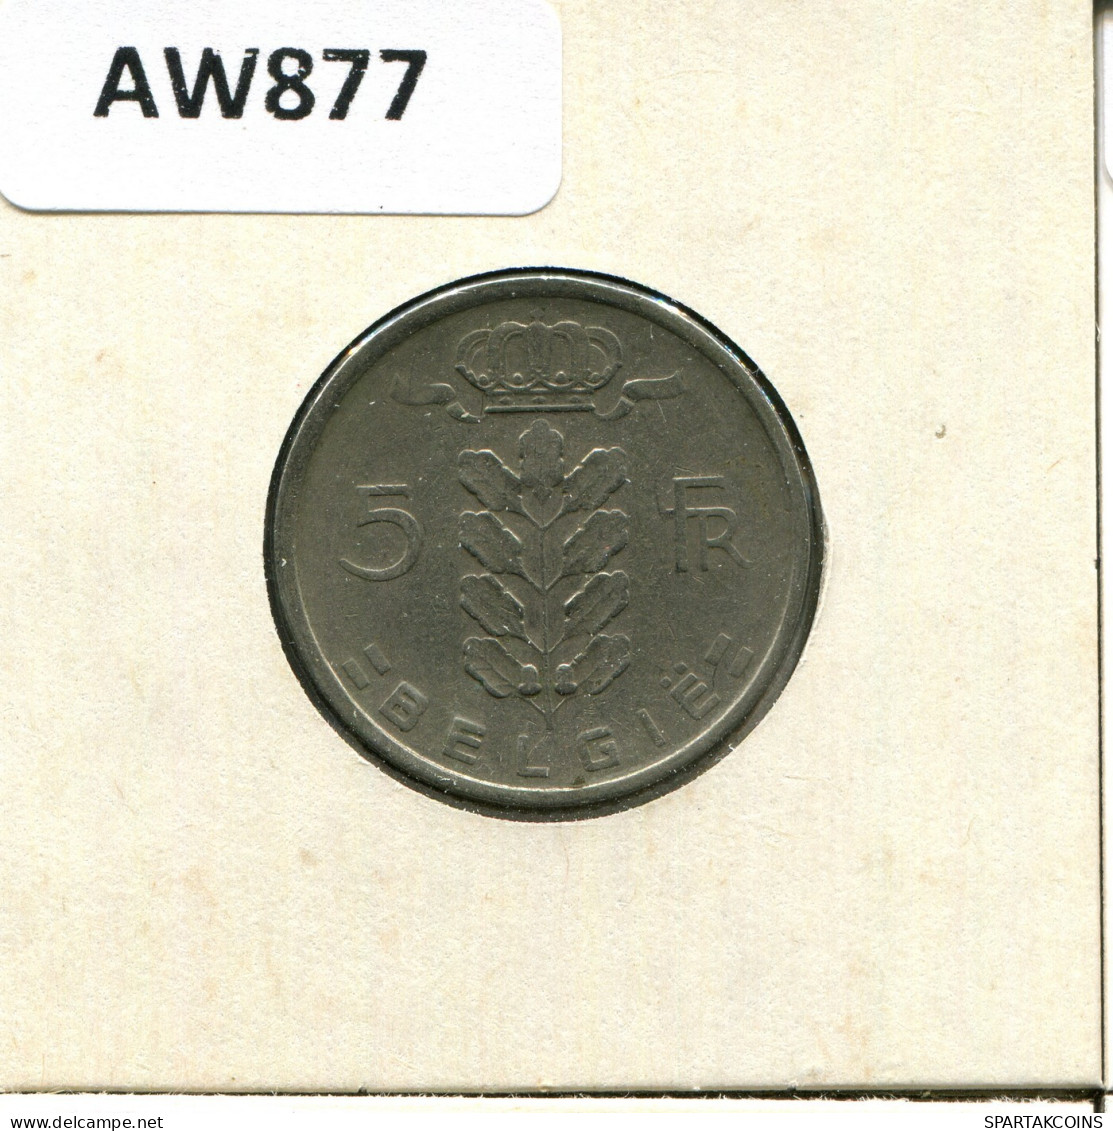 5 FRANCS 1949 DUTCH Text BELGIEN BELGIUM Münze #AW877.D.A - 5 Francs